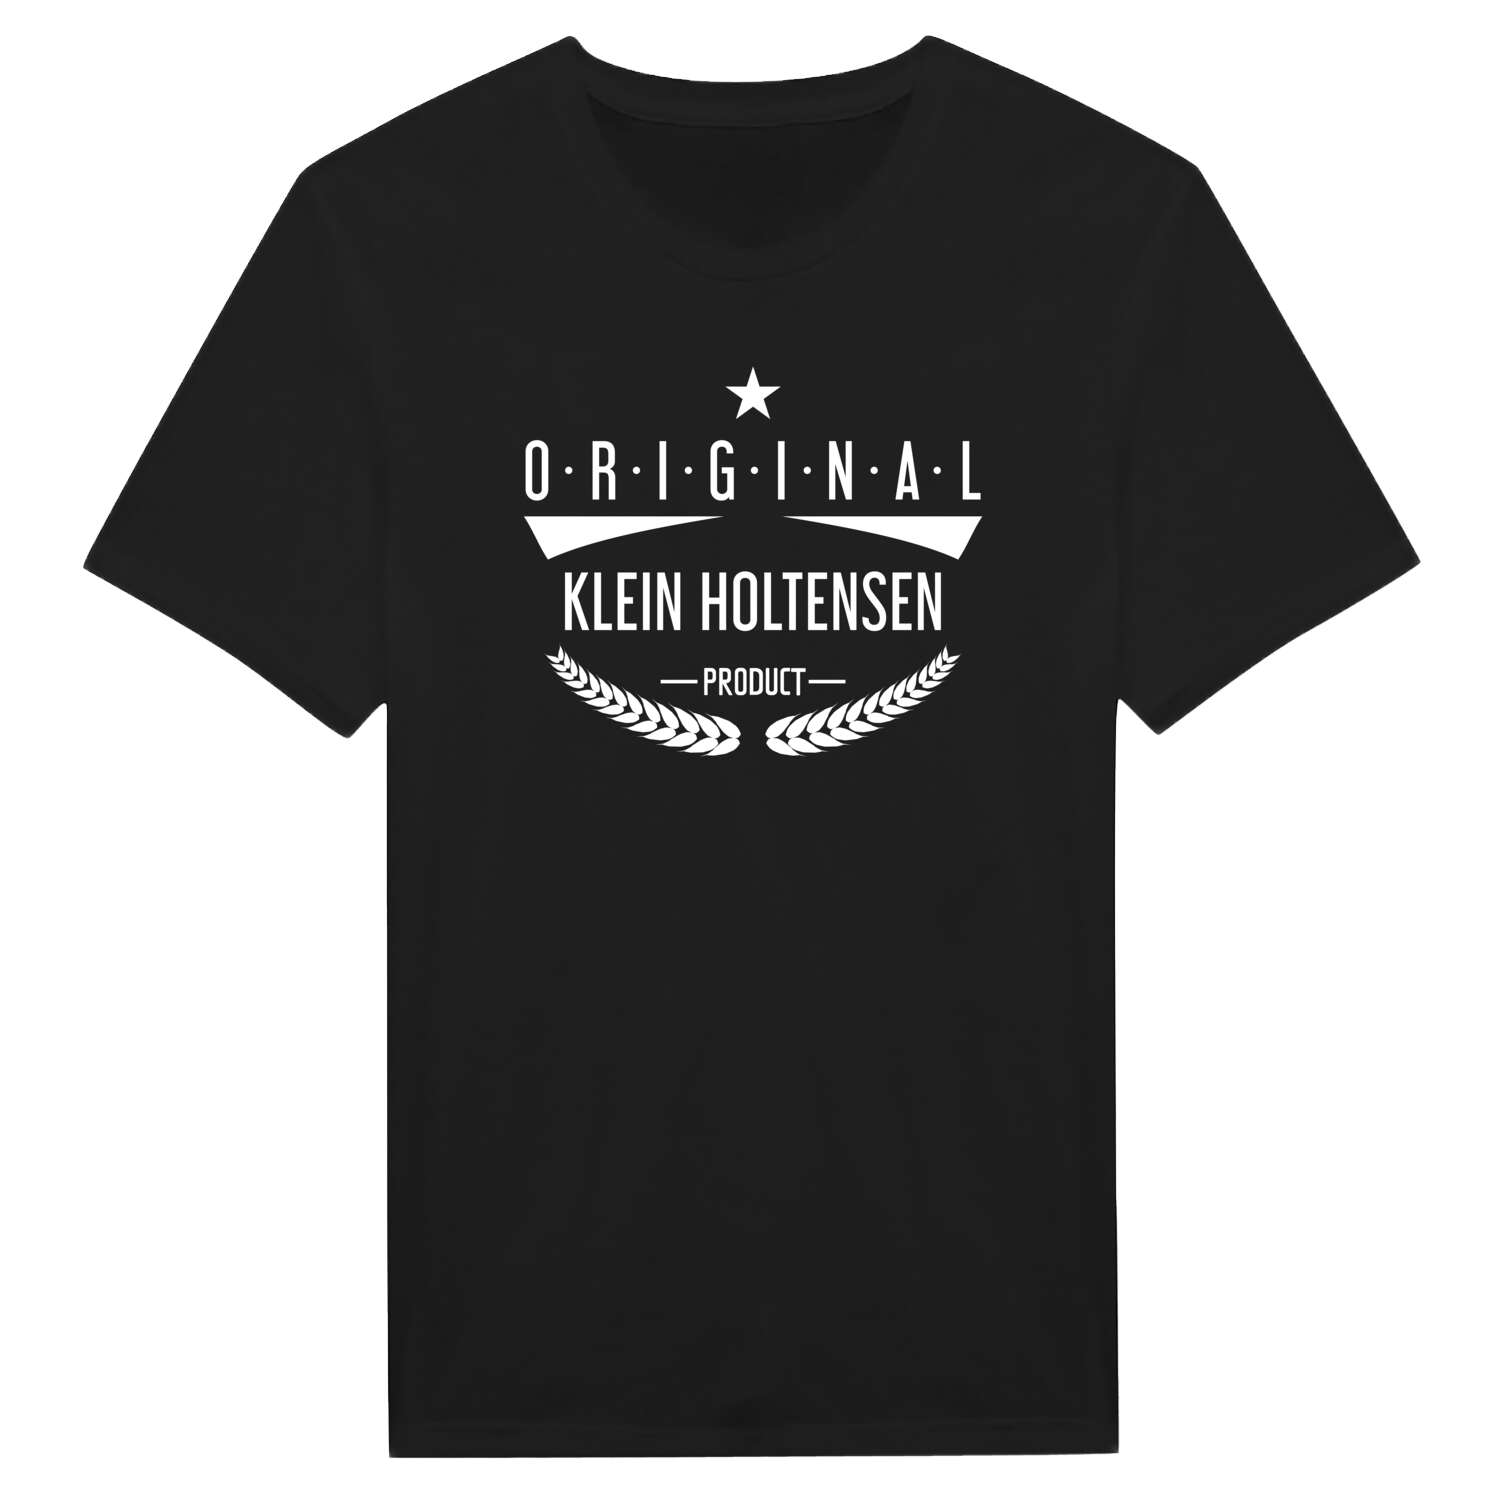 Klein Holtensen T-Shirt »Original Product«